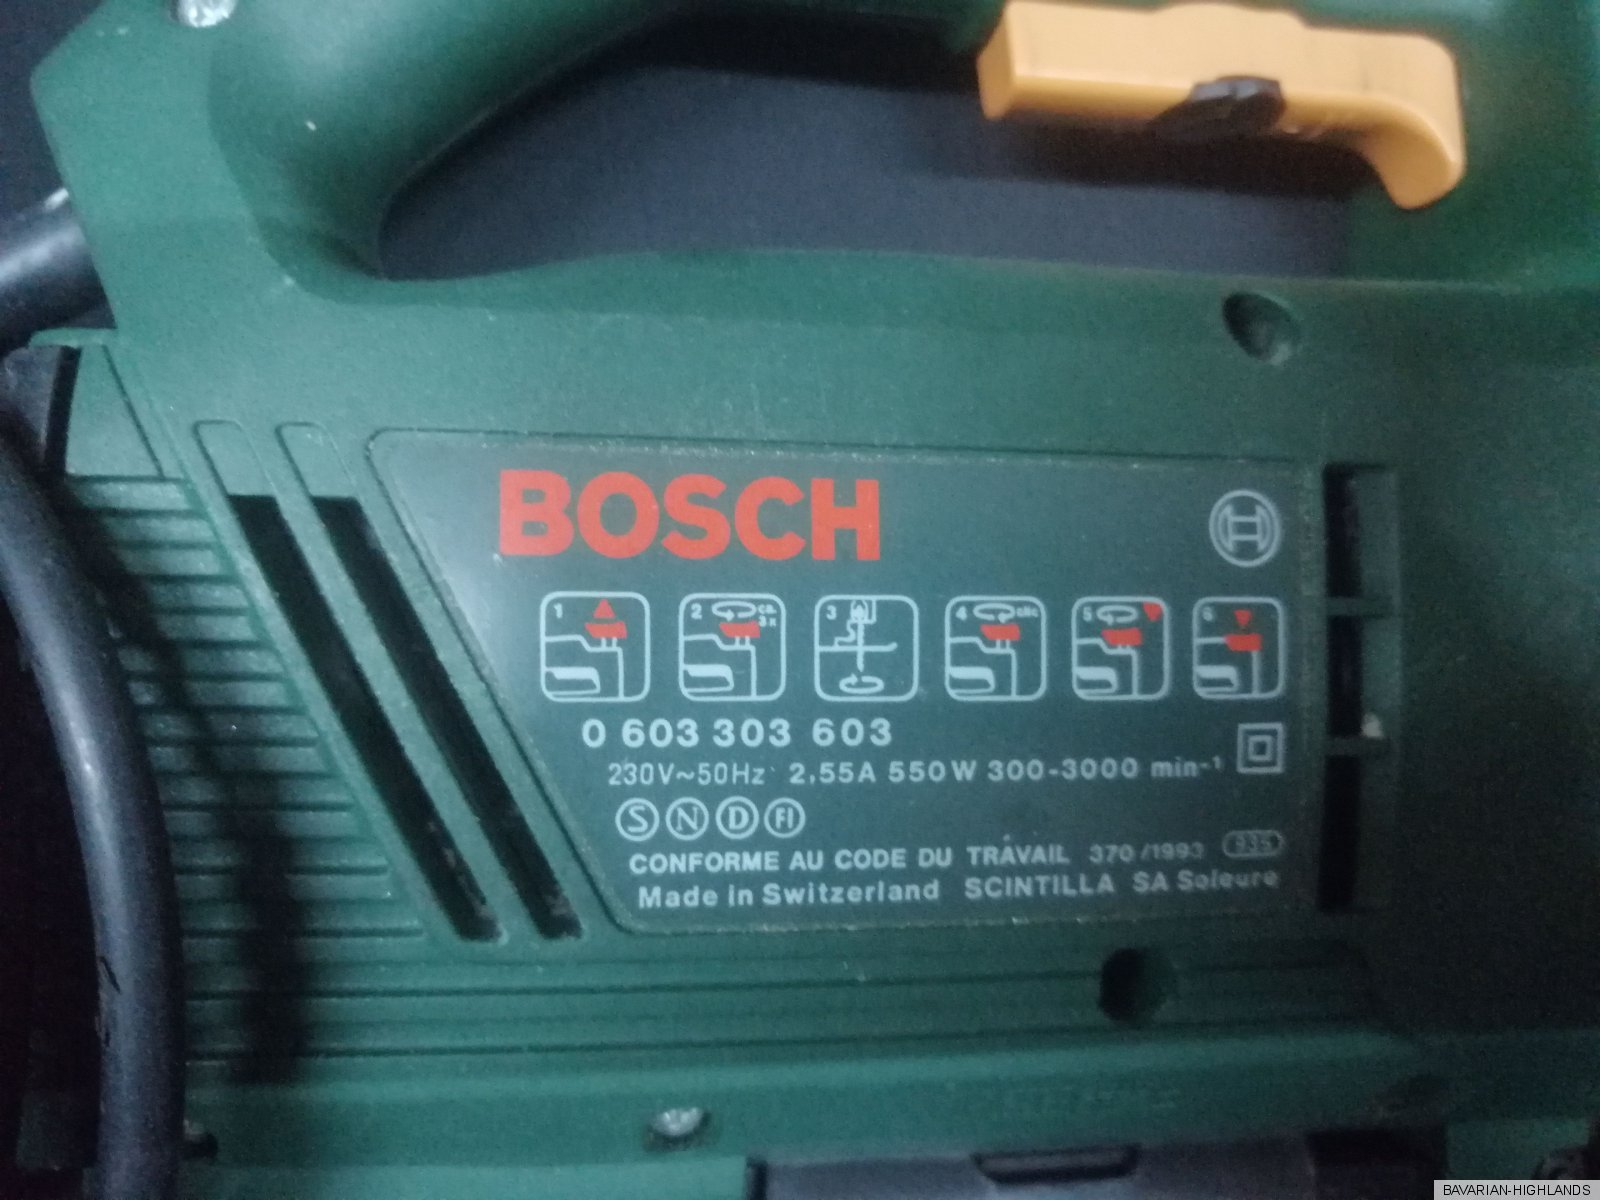 Bosch PST 700 PAE Pendelhubstichsäge Stichsäge 550W max.70mm SDS | eBay